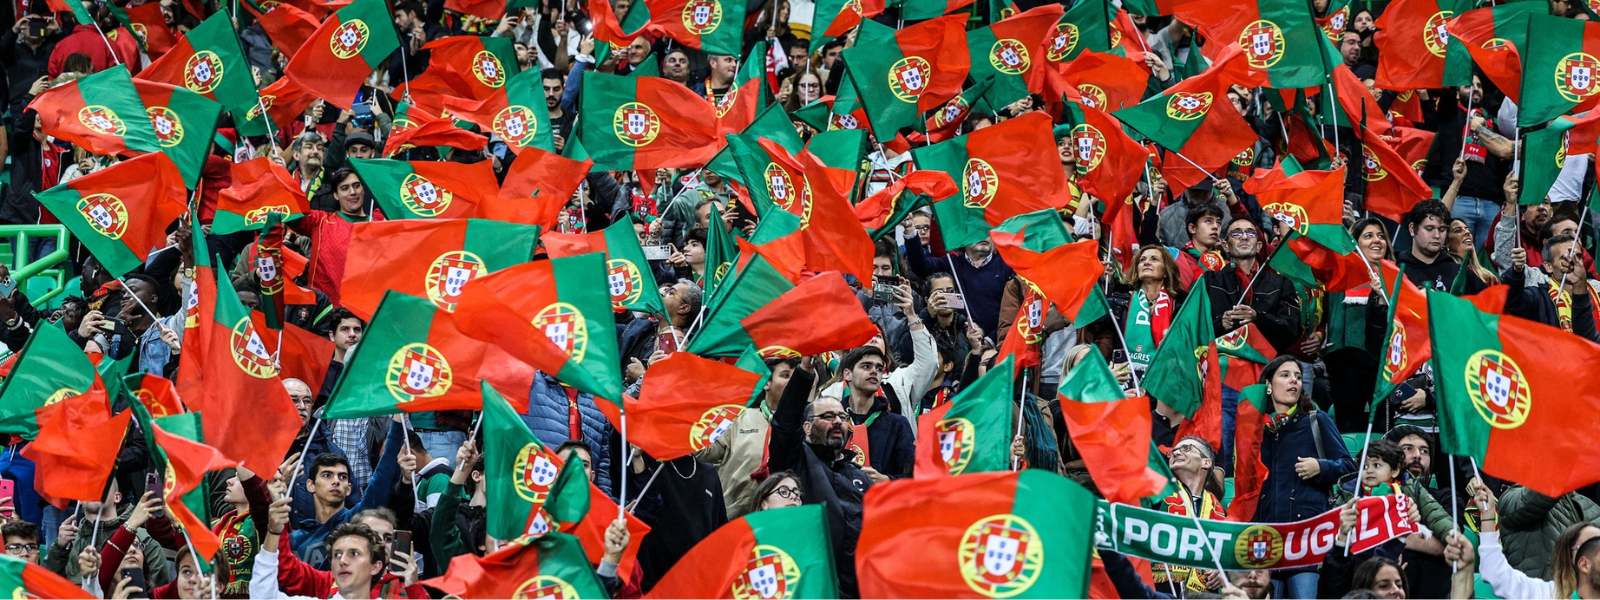 Distrito do Porto recebe 40º Torneio Internacional de futebol Sub-18 -  AFPorto